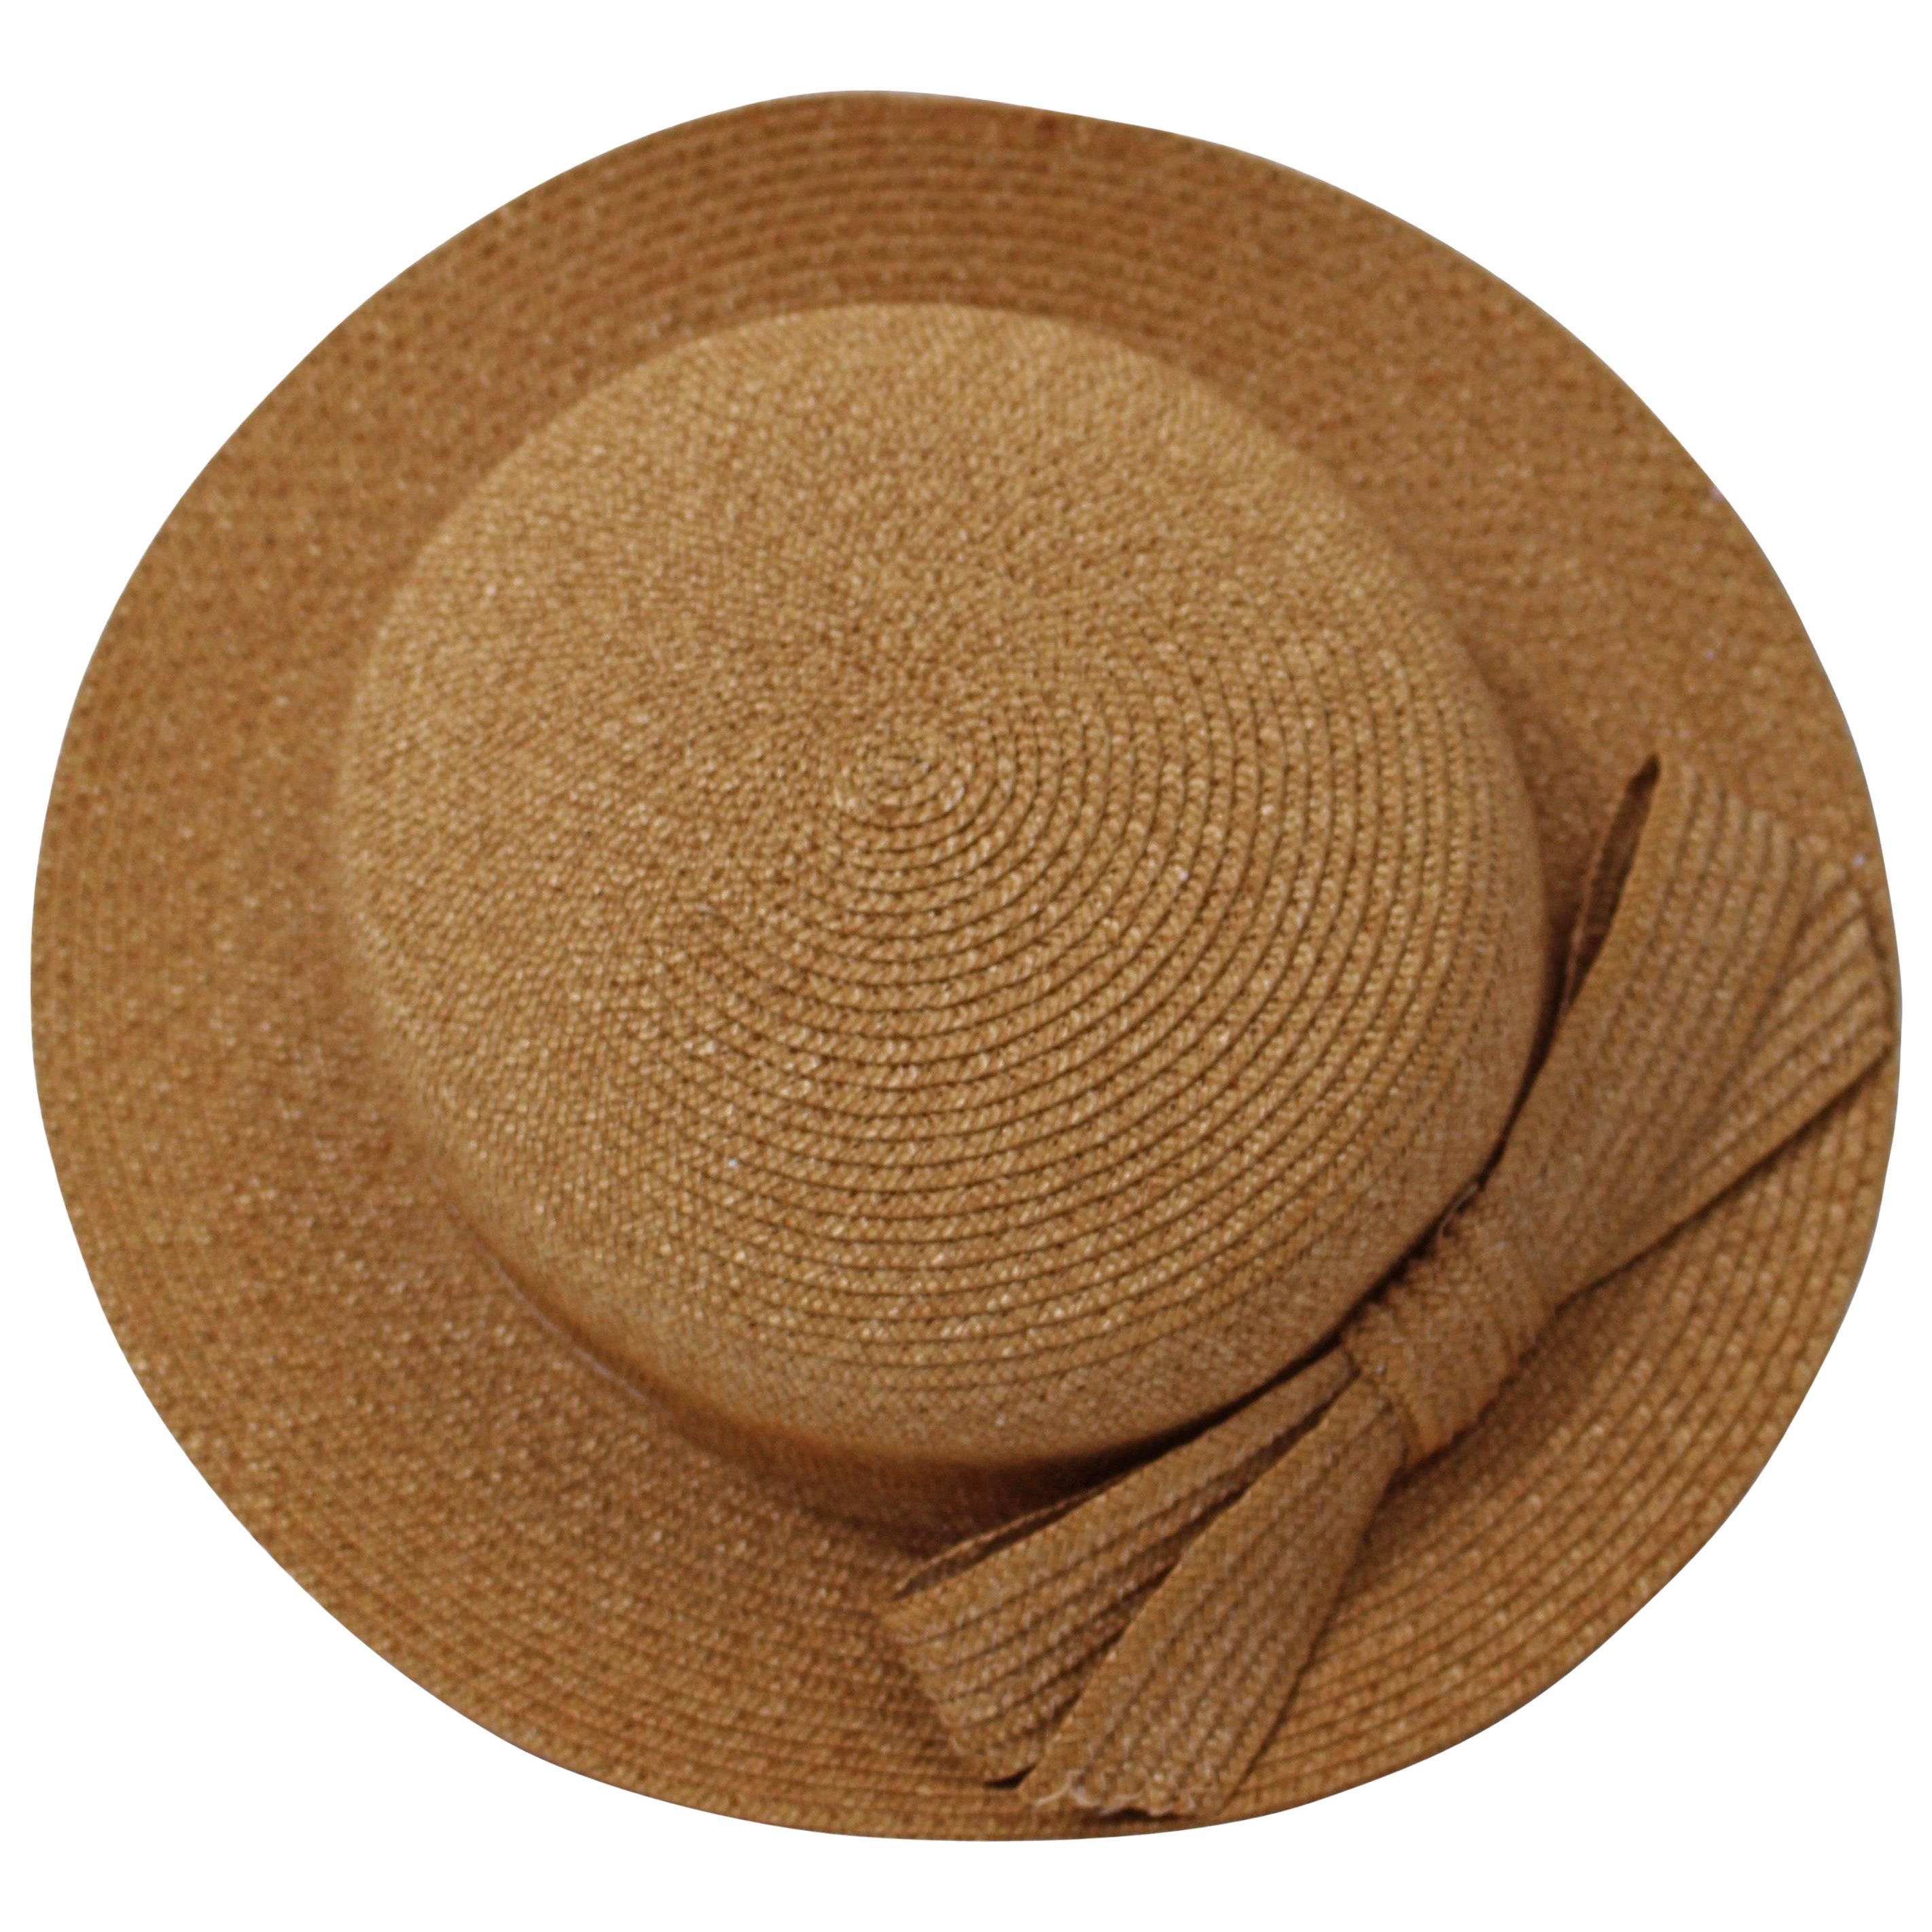 Chapeau vintage Emillio Pucci en paille tissée brun clair avec nœud